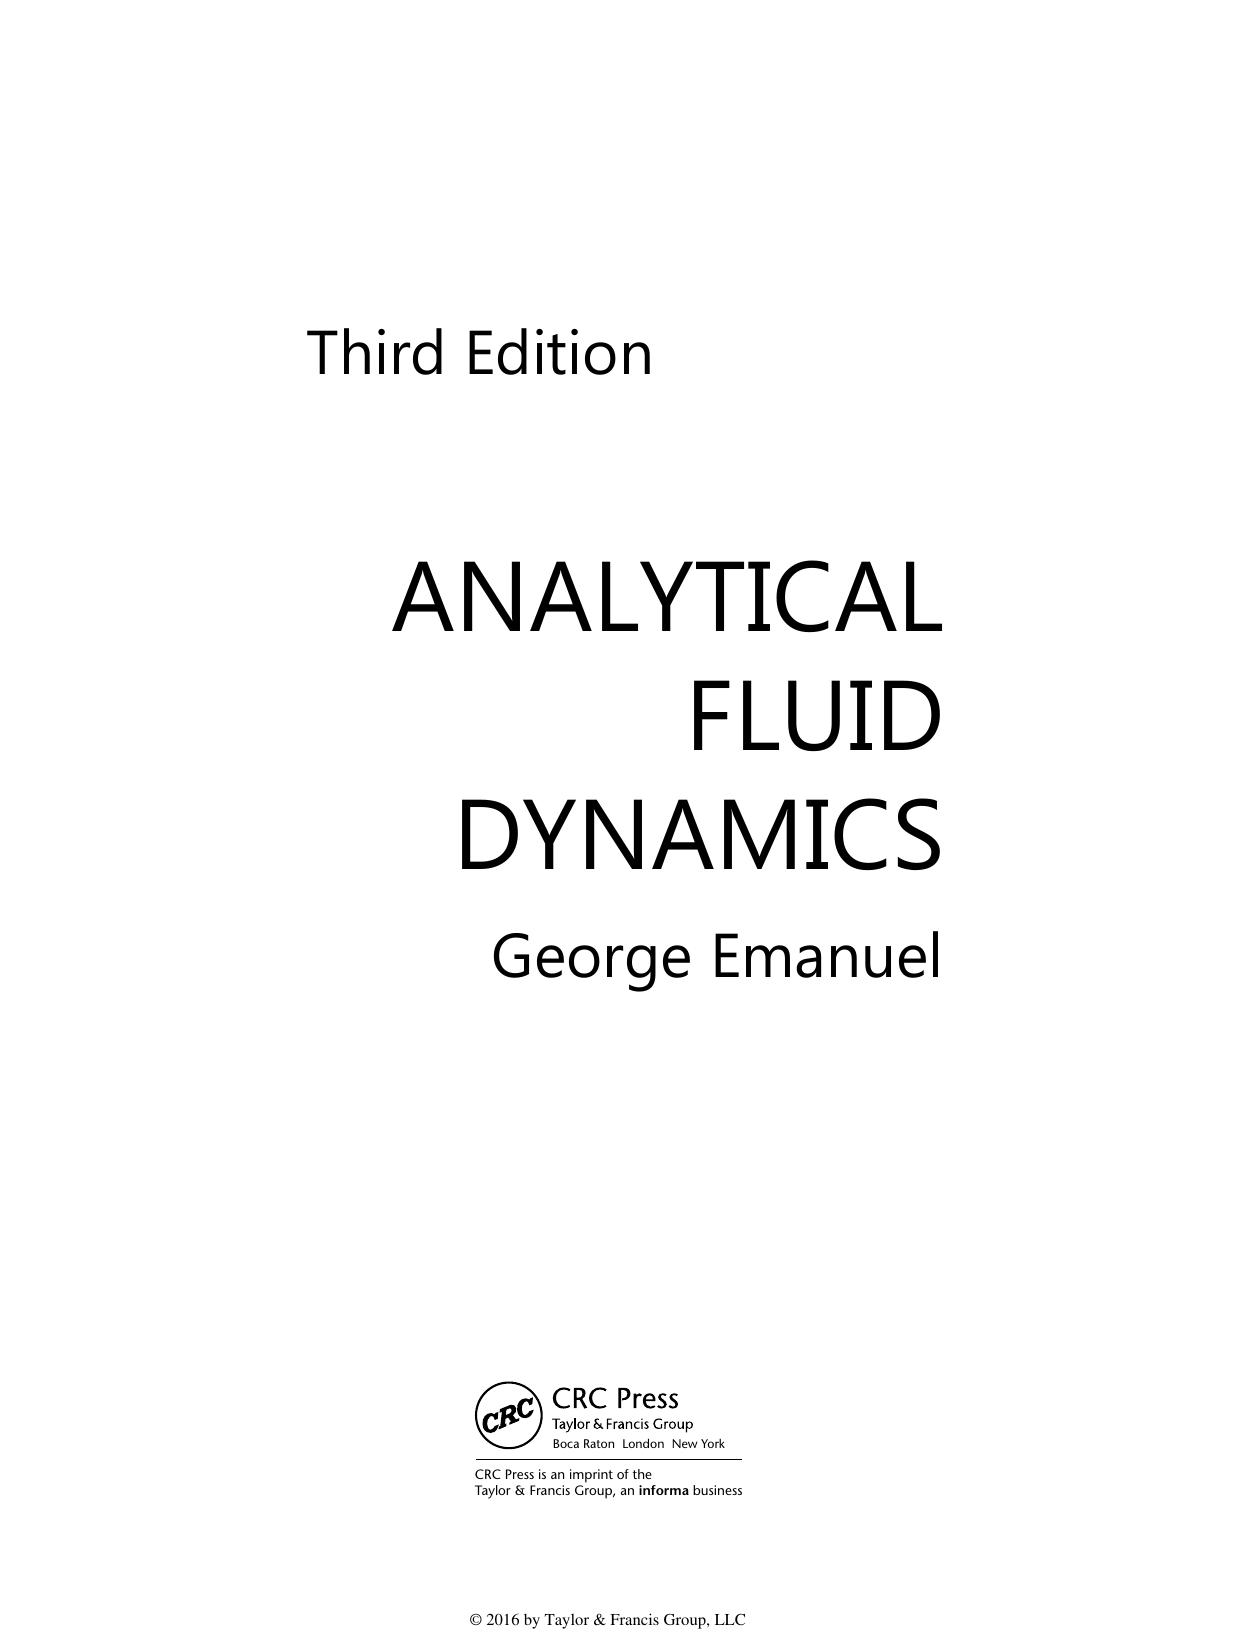 Analytical fluid dynamics 2016